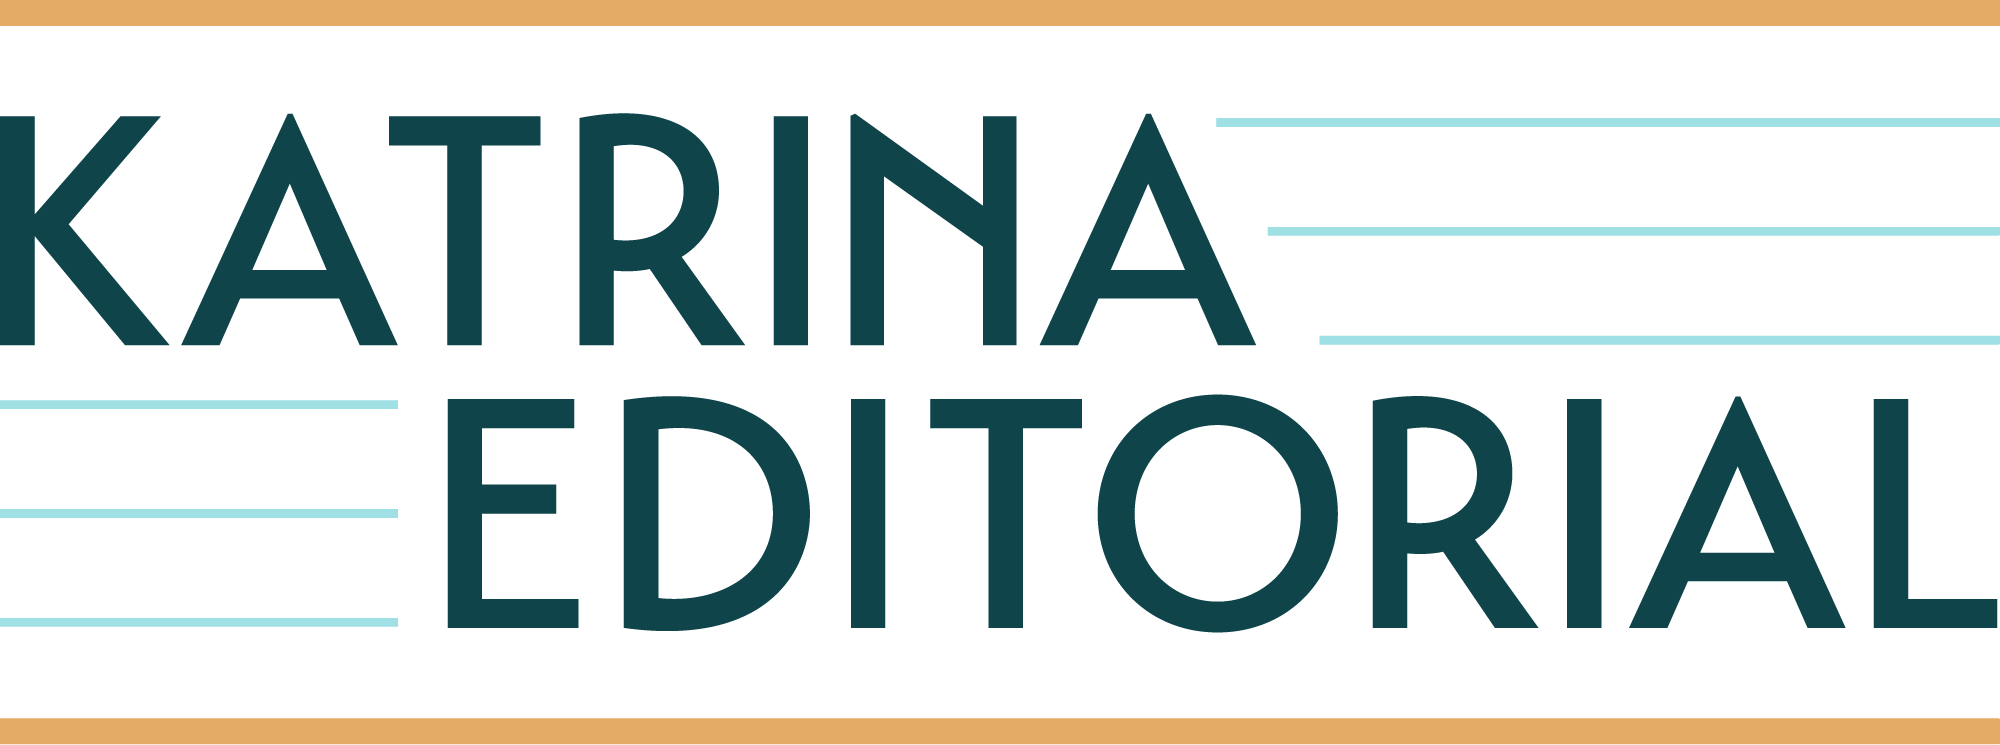 Katrina Editorial logo